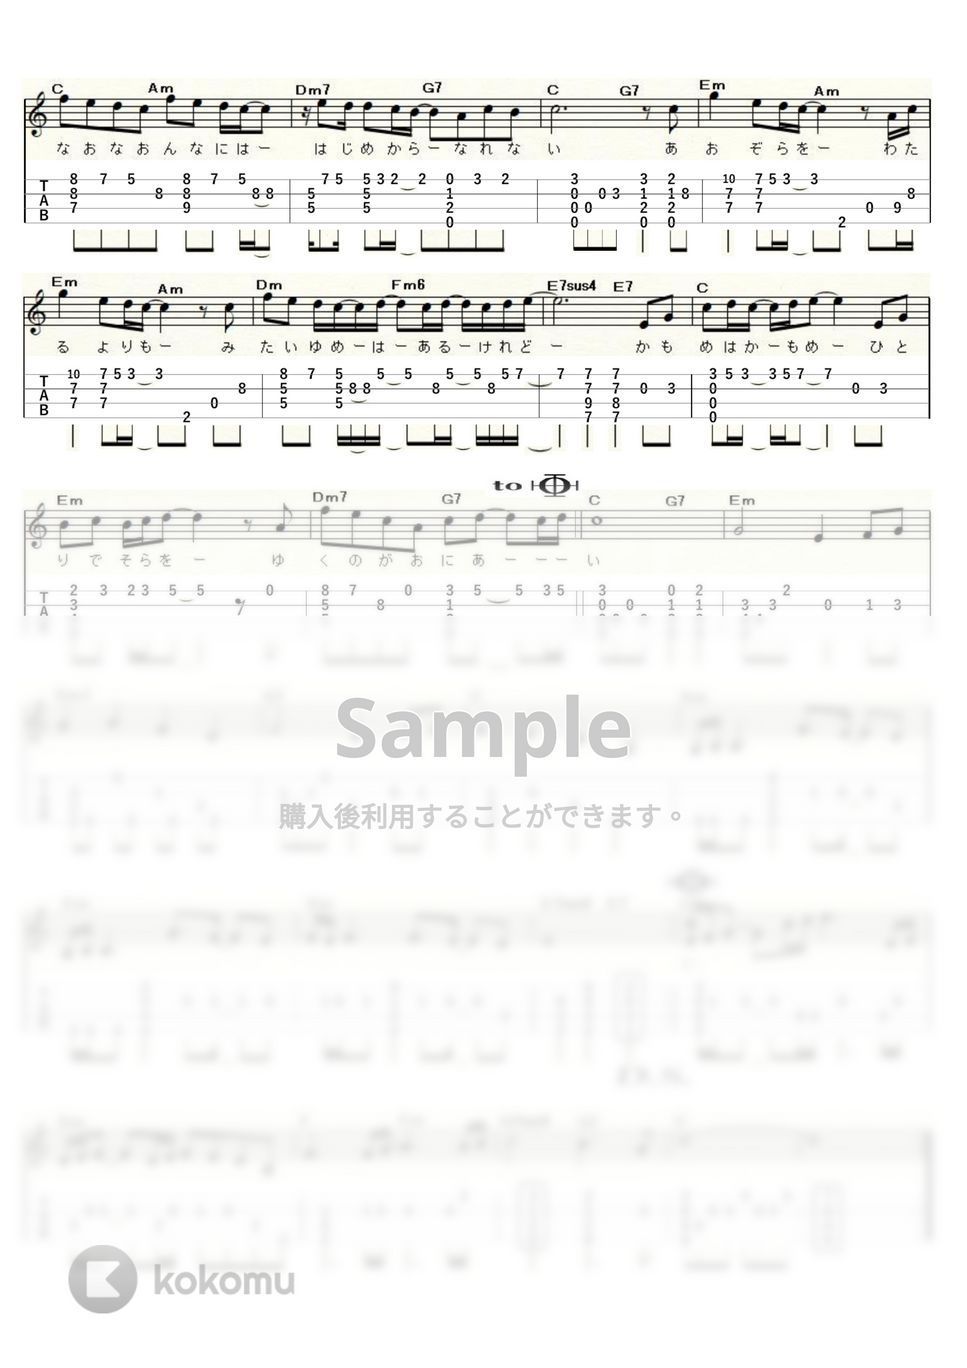 研ナオコ - かもめはかもめ (ｳｸﾚﾚｿﾛ / Low-G / 中～上級) by ukulelepapa